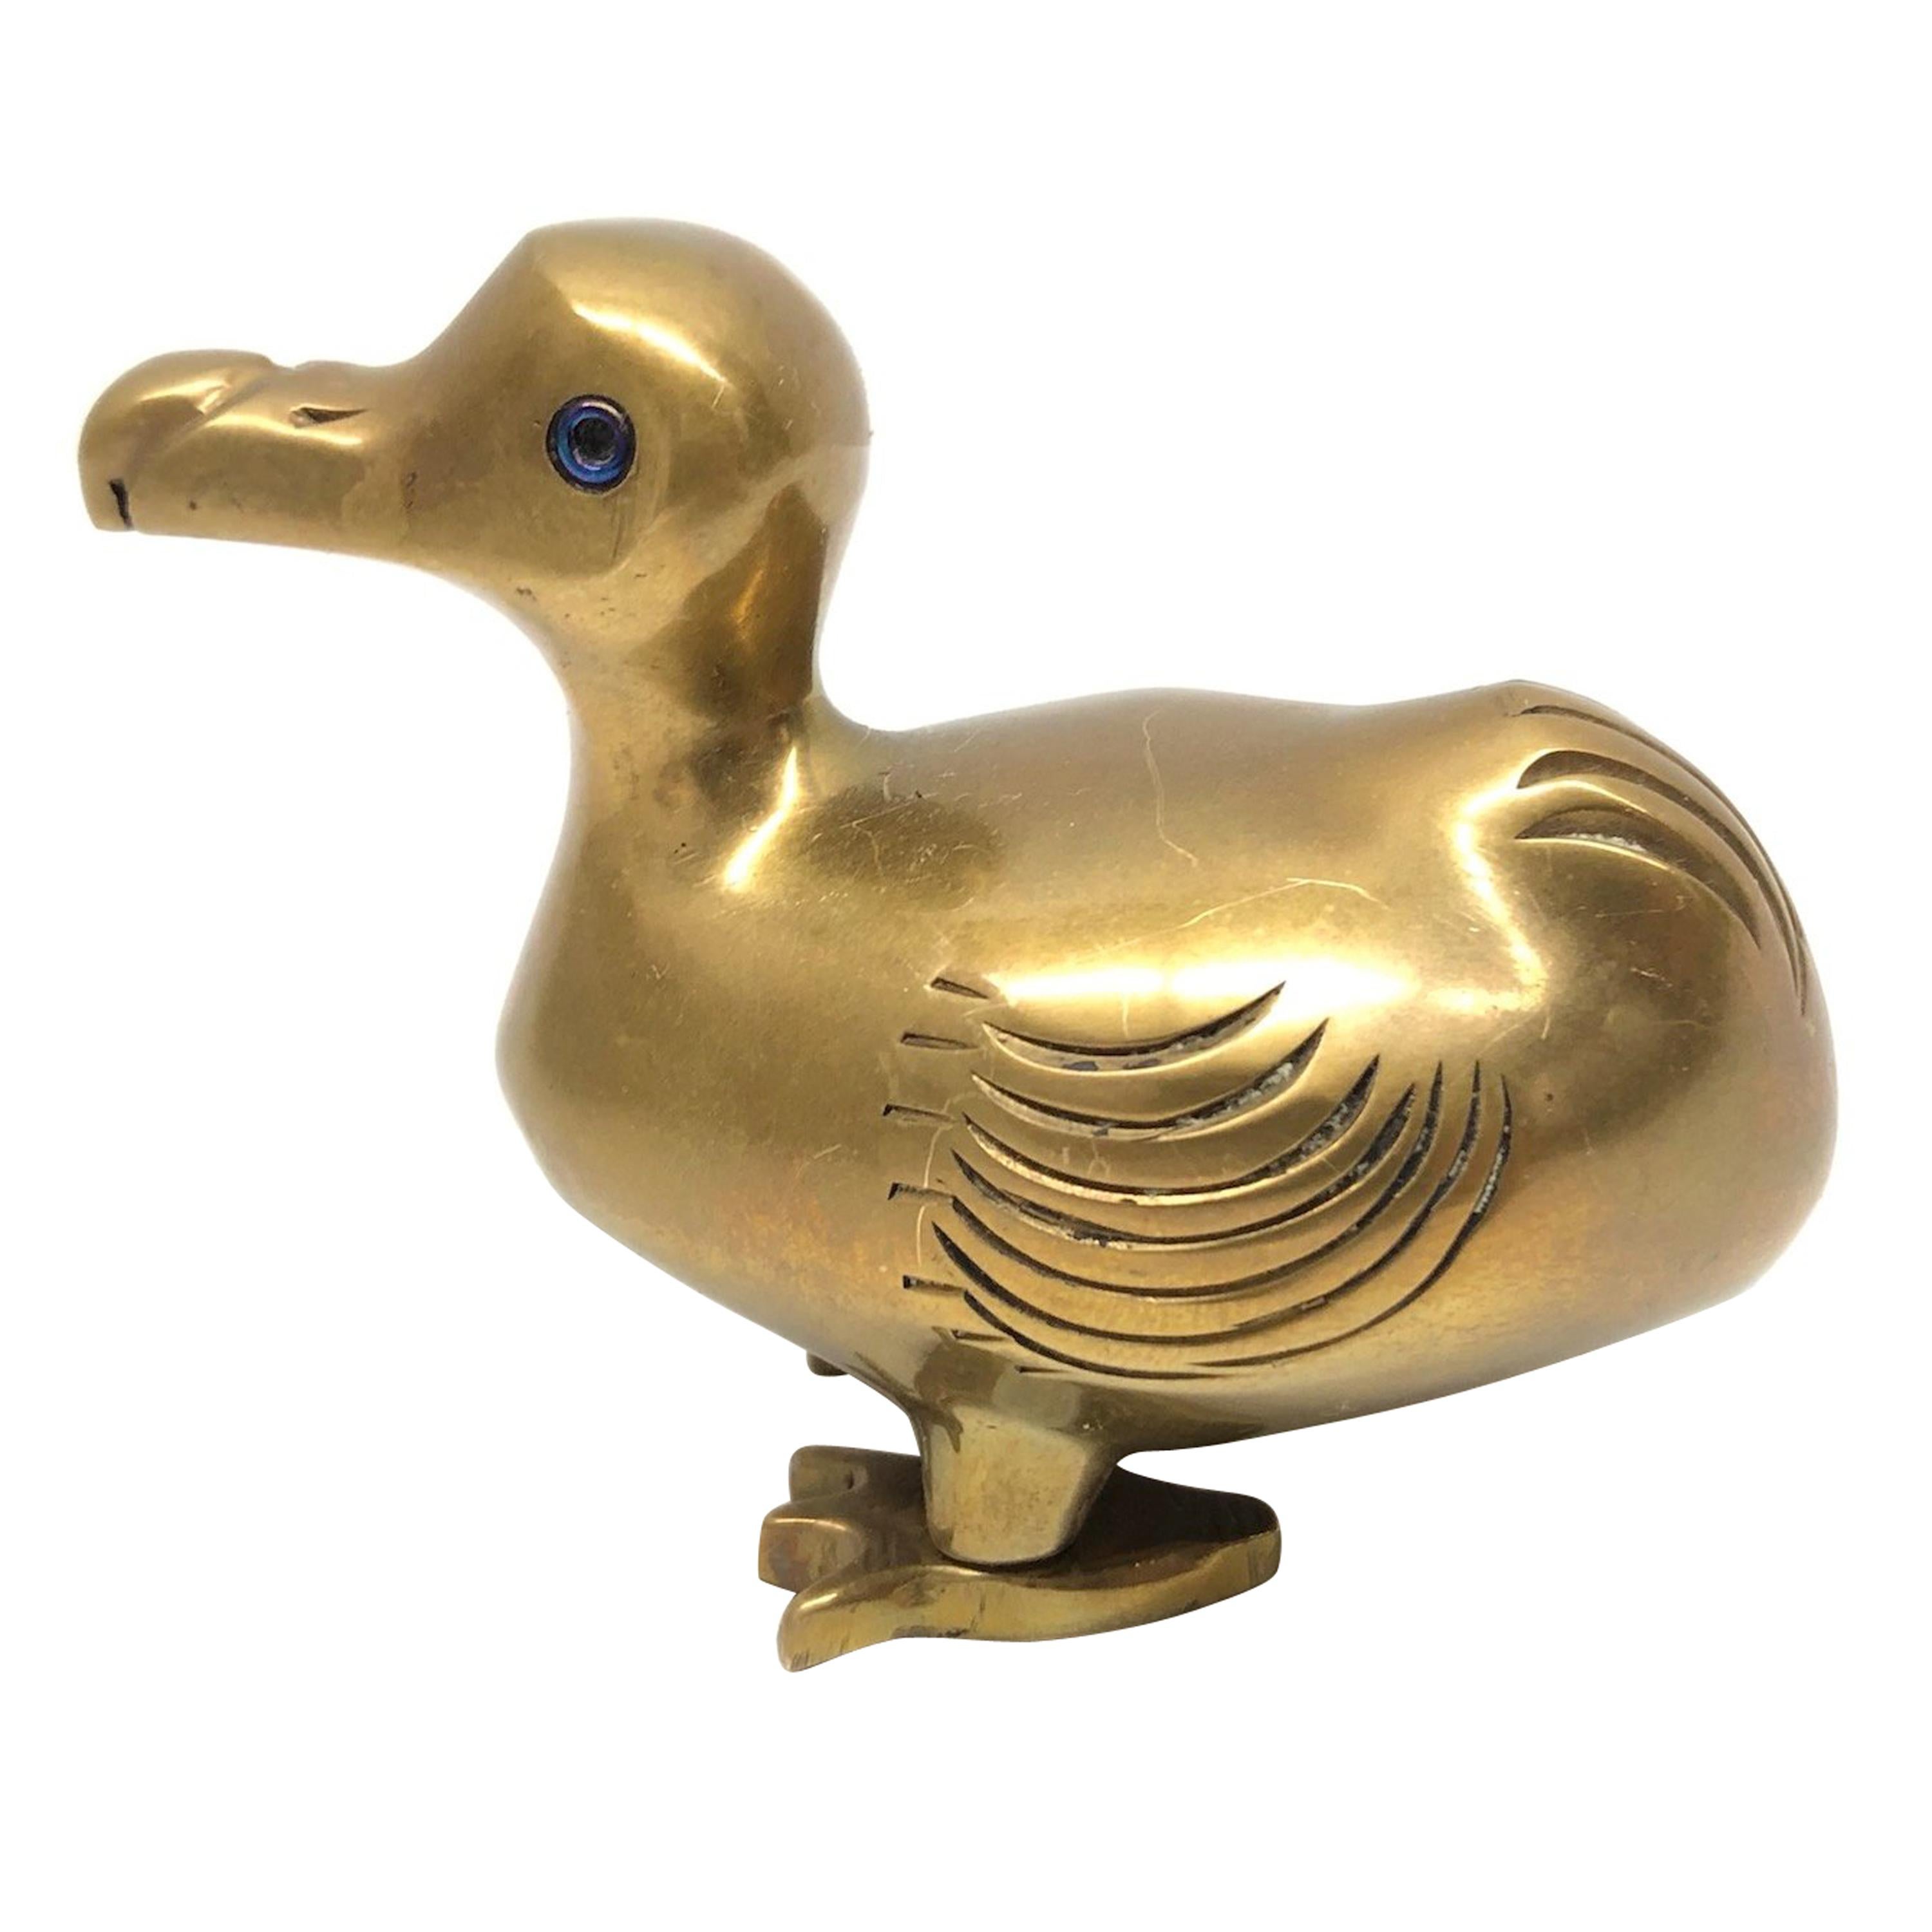 Brass Dodo Bird Figurine Desktop Paperweight 1950s Mid-Century Modern, German